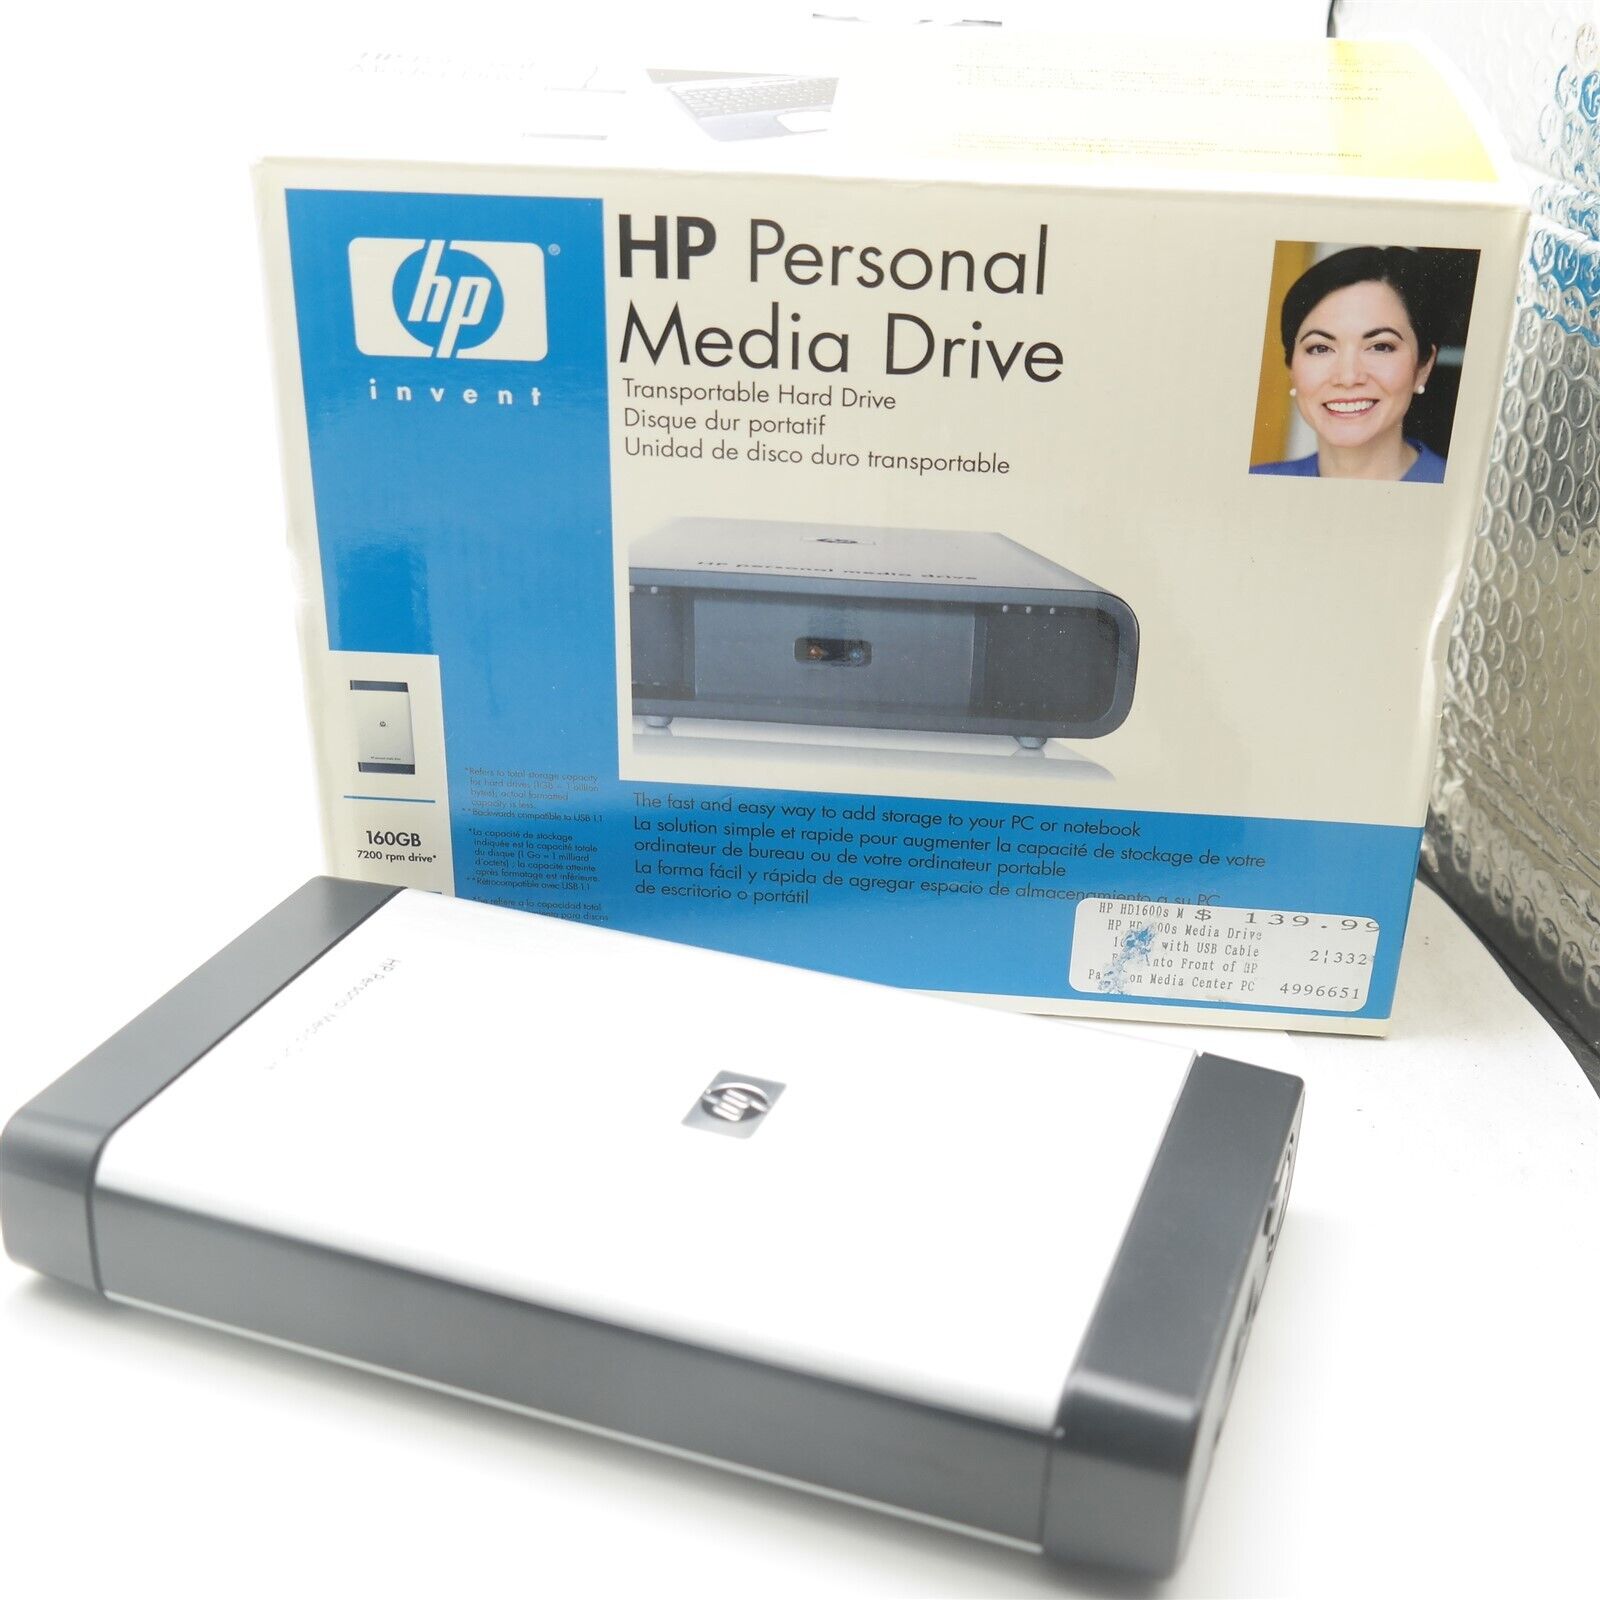 HP Personal Media Drive 160GB Model Hd1600s External Hard Drive HD 